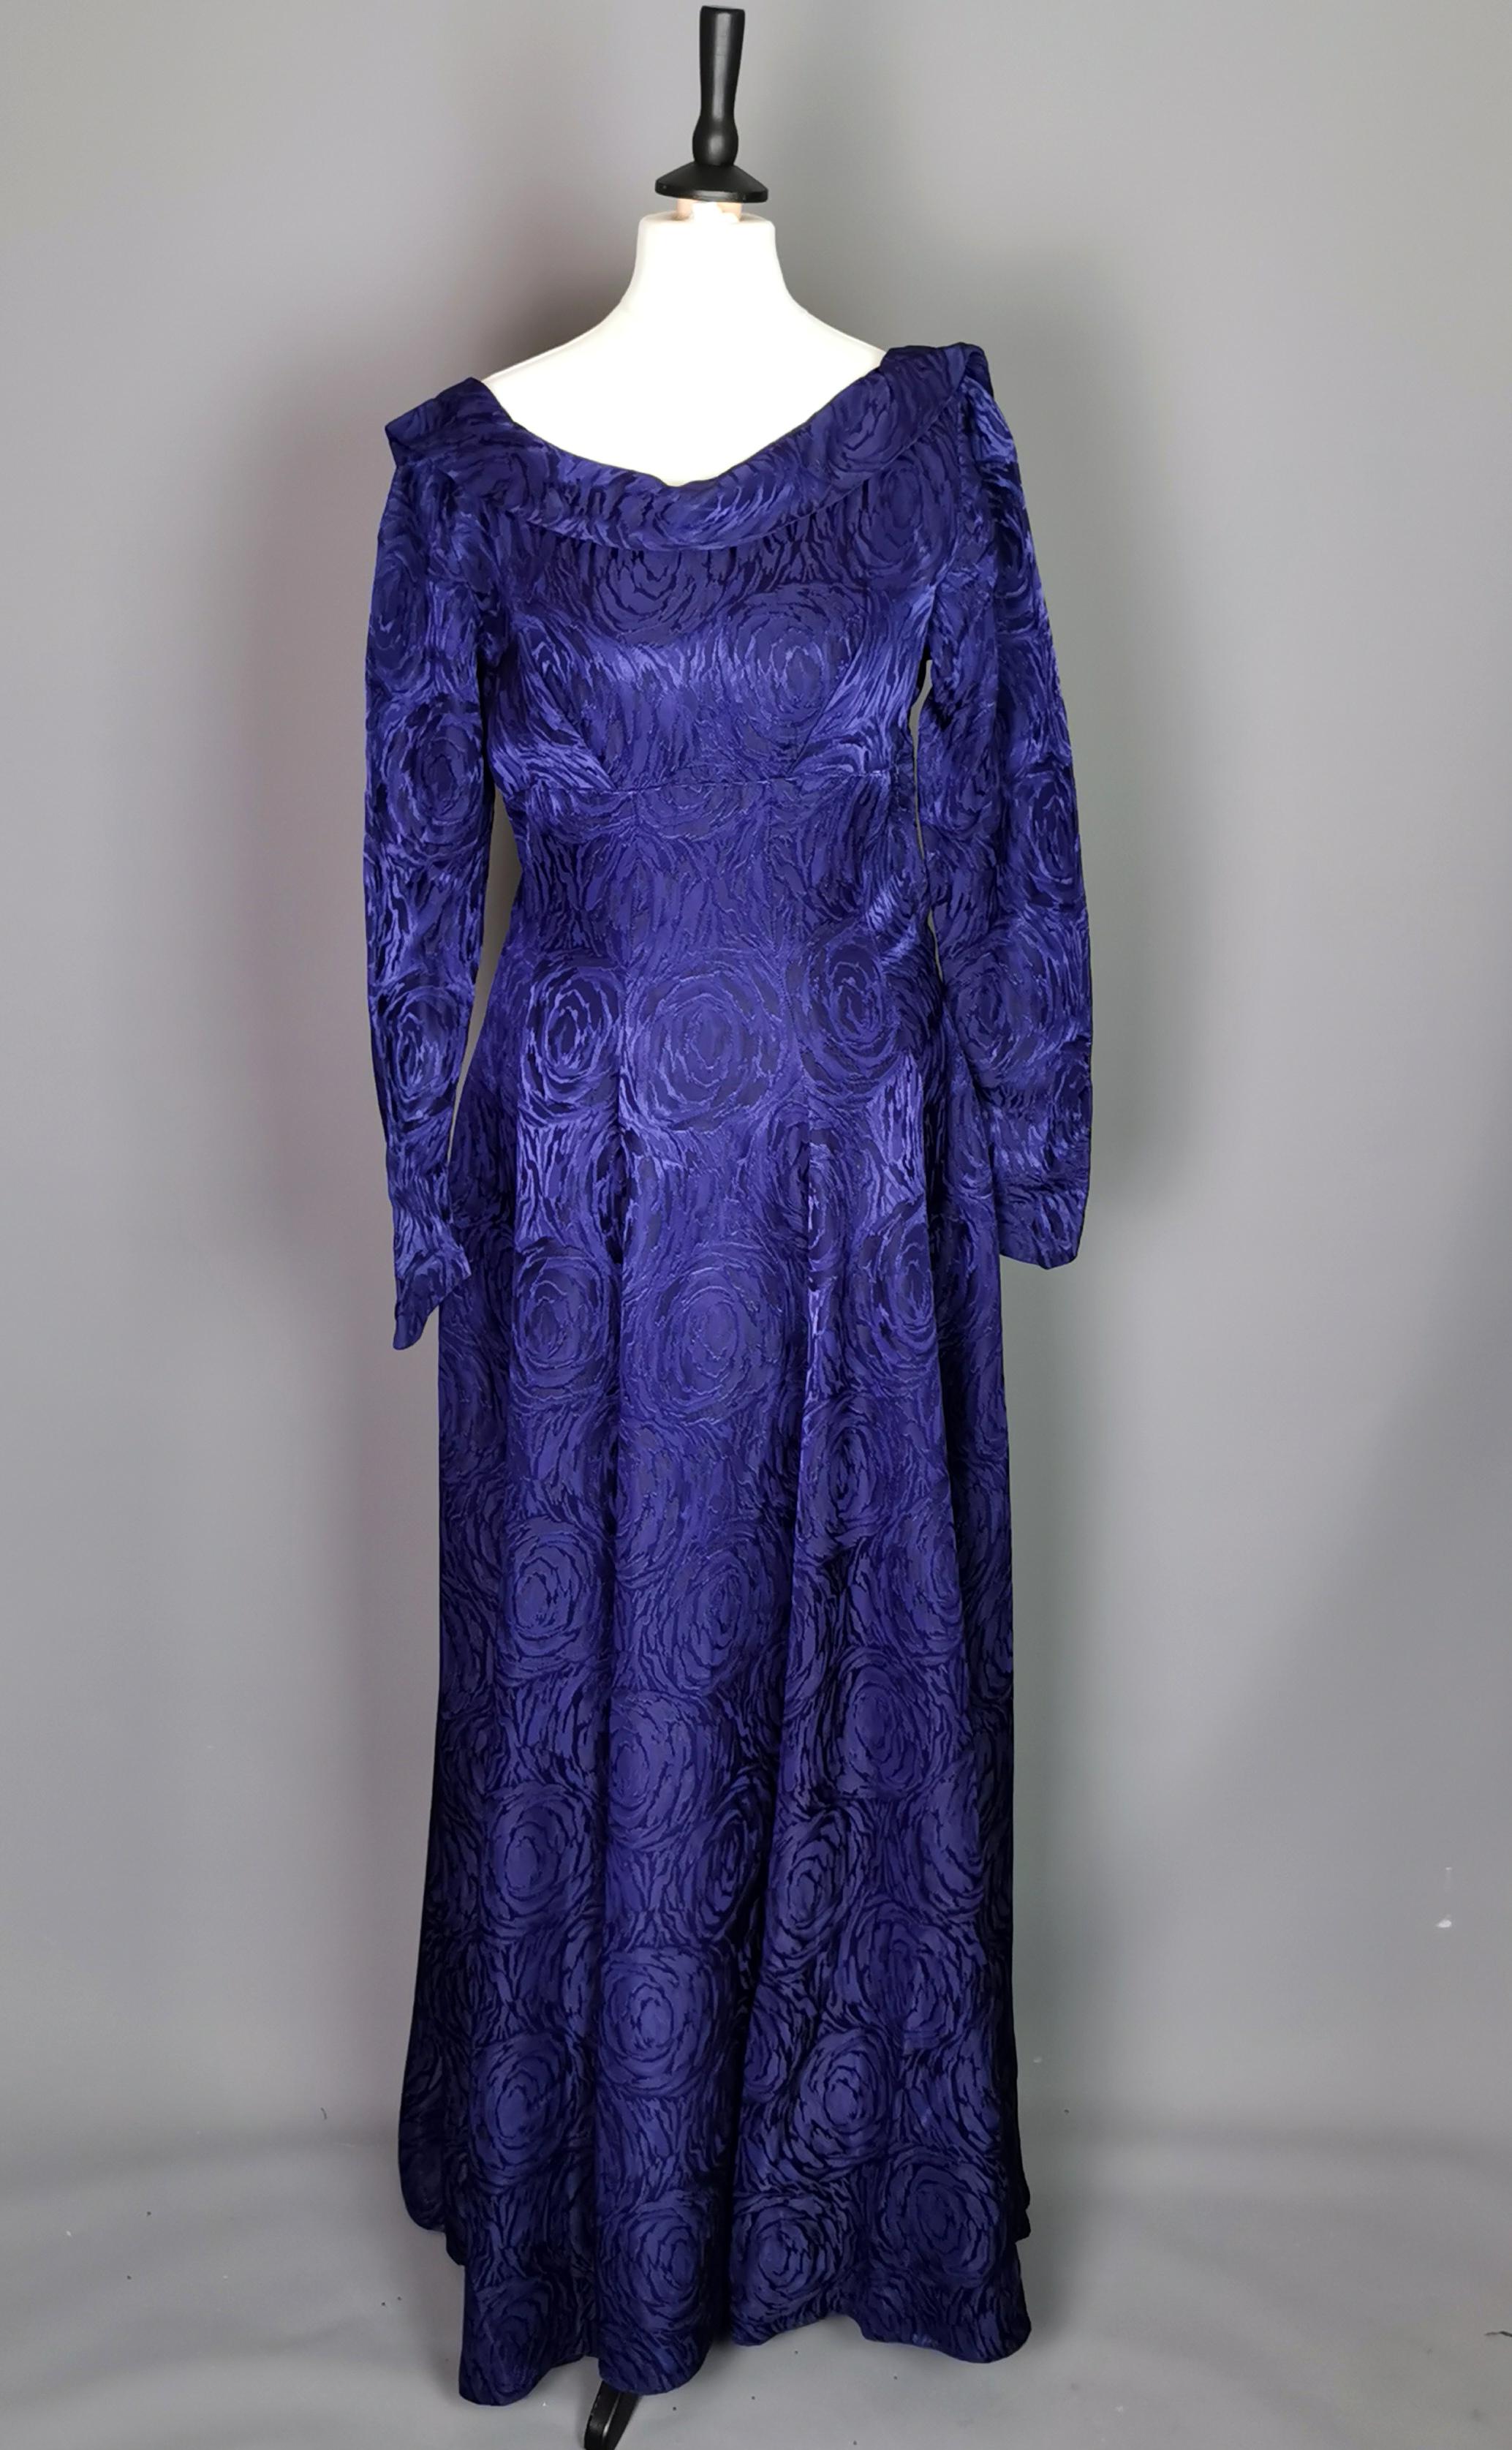 Cette robe de soirée vintage de la fin des années 1940 est tout simplement magnifique.

Fabriqué dans un tissu de brocart de satin violet très épais, avec un motif floral tourbillonnant.

Il possède de longues manches tulipes qui se ferment au